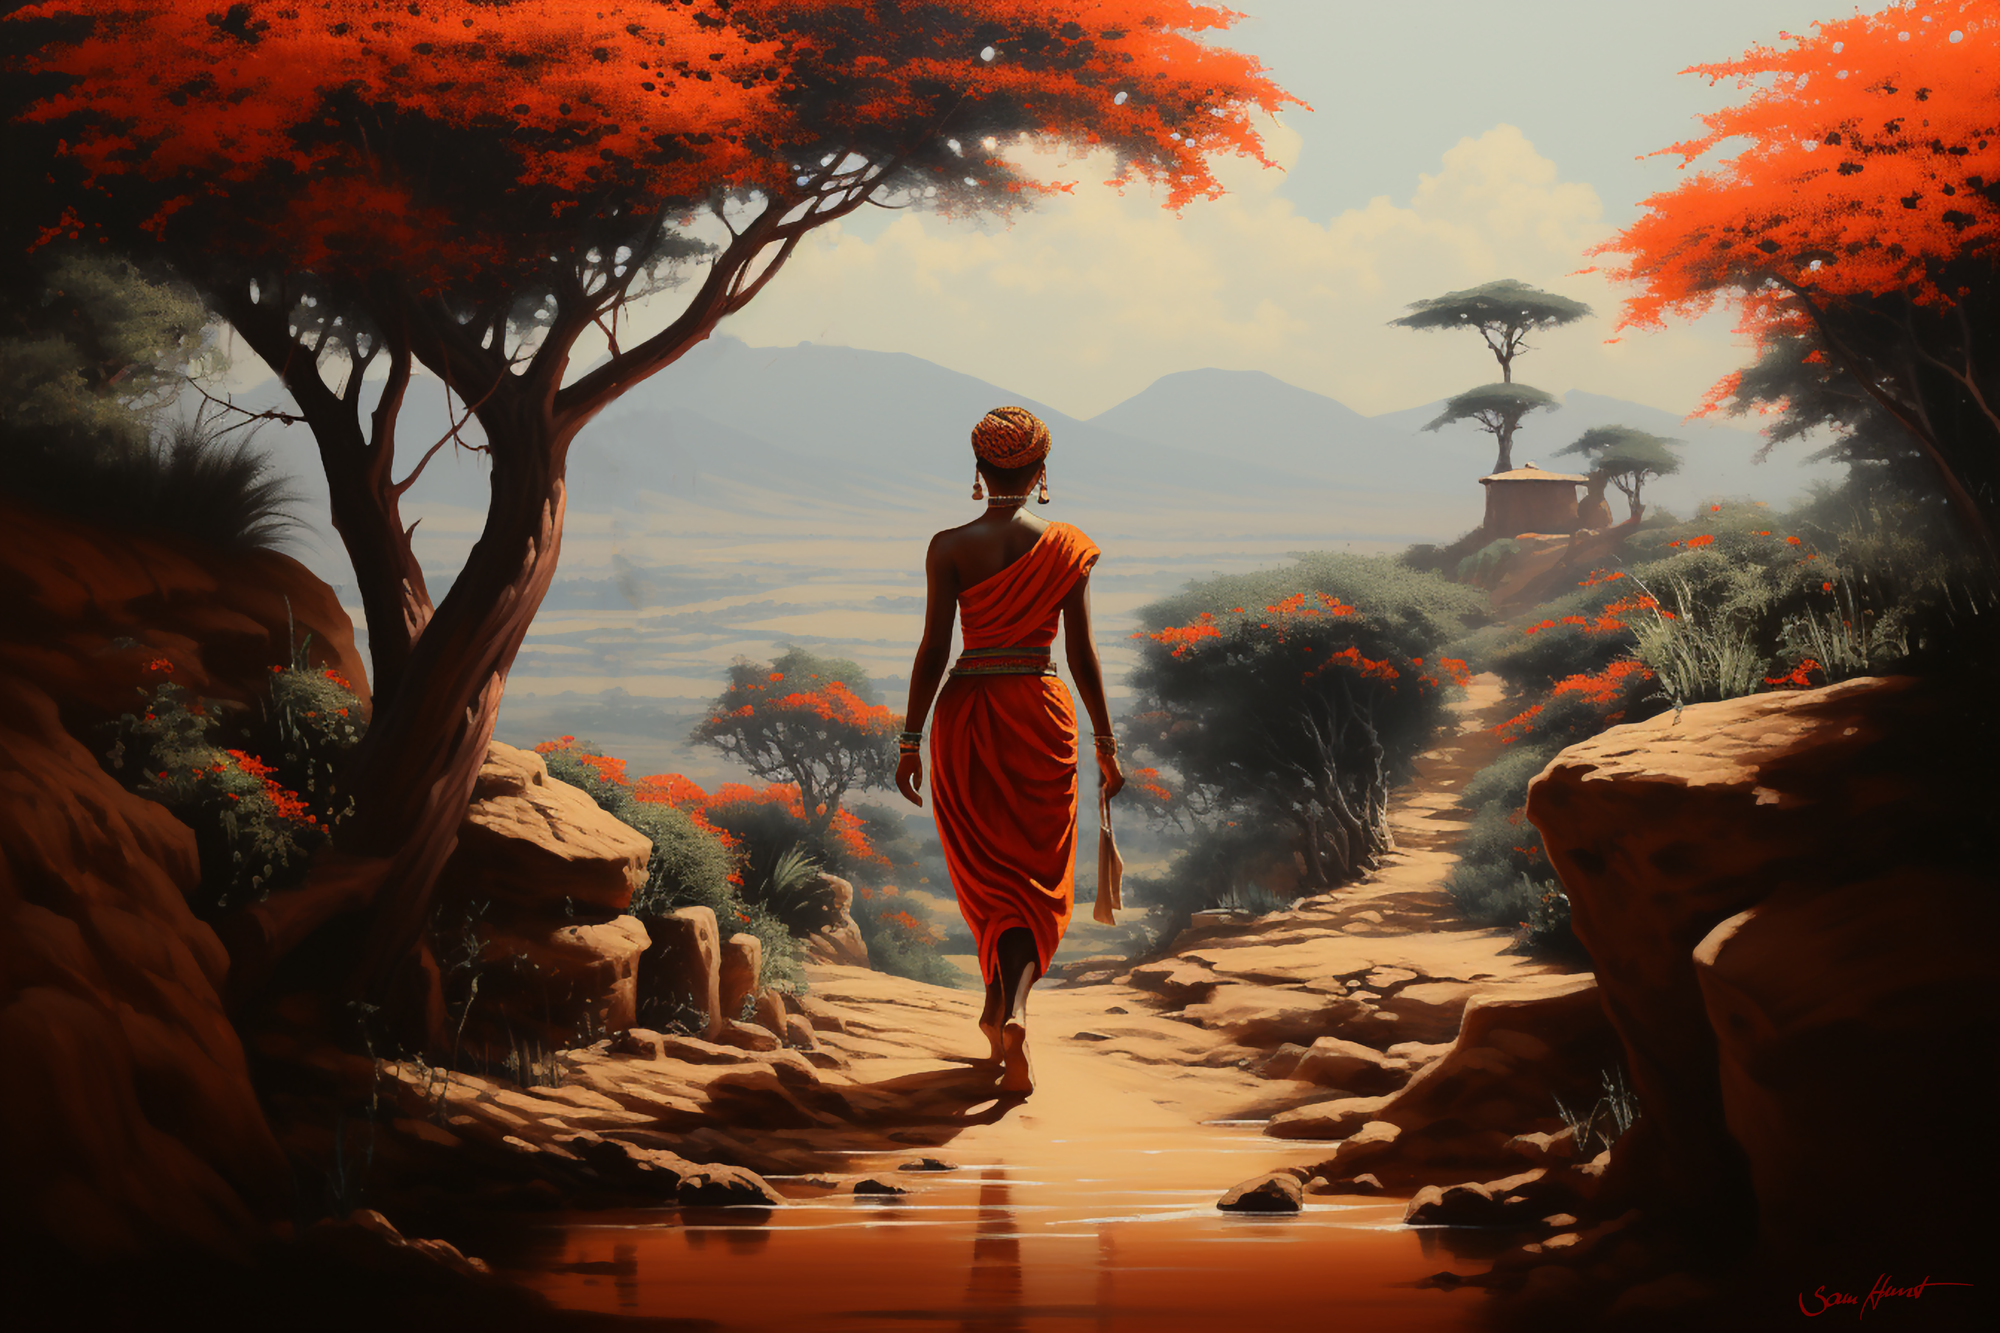 Afrikanische Frau auf dem Weg zum Dorf